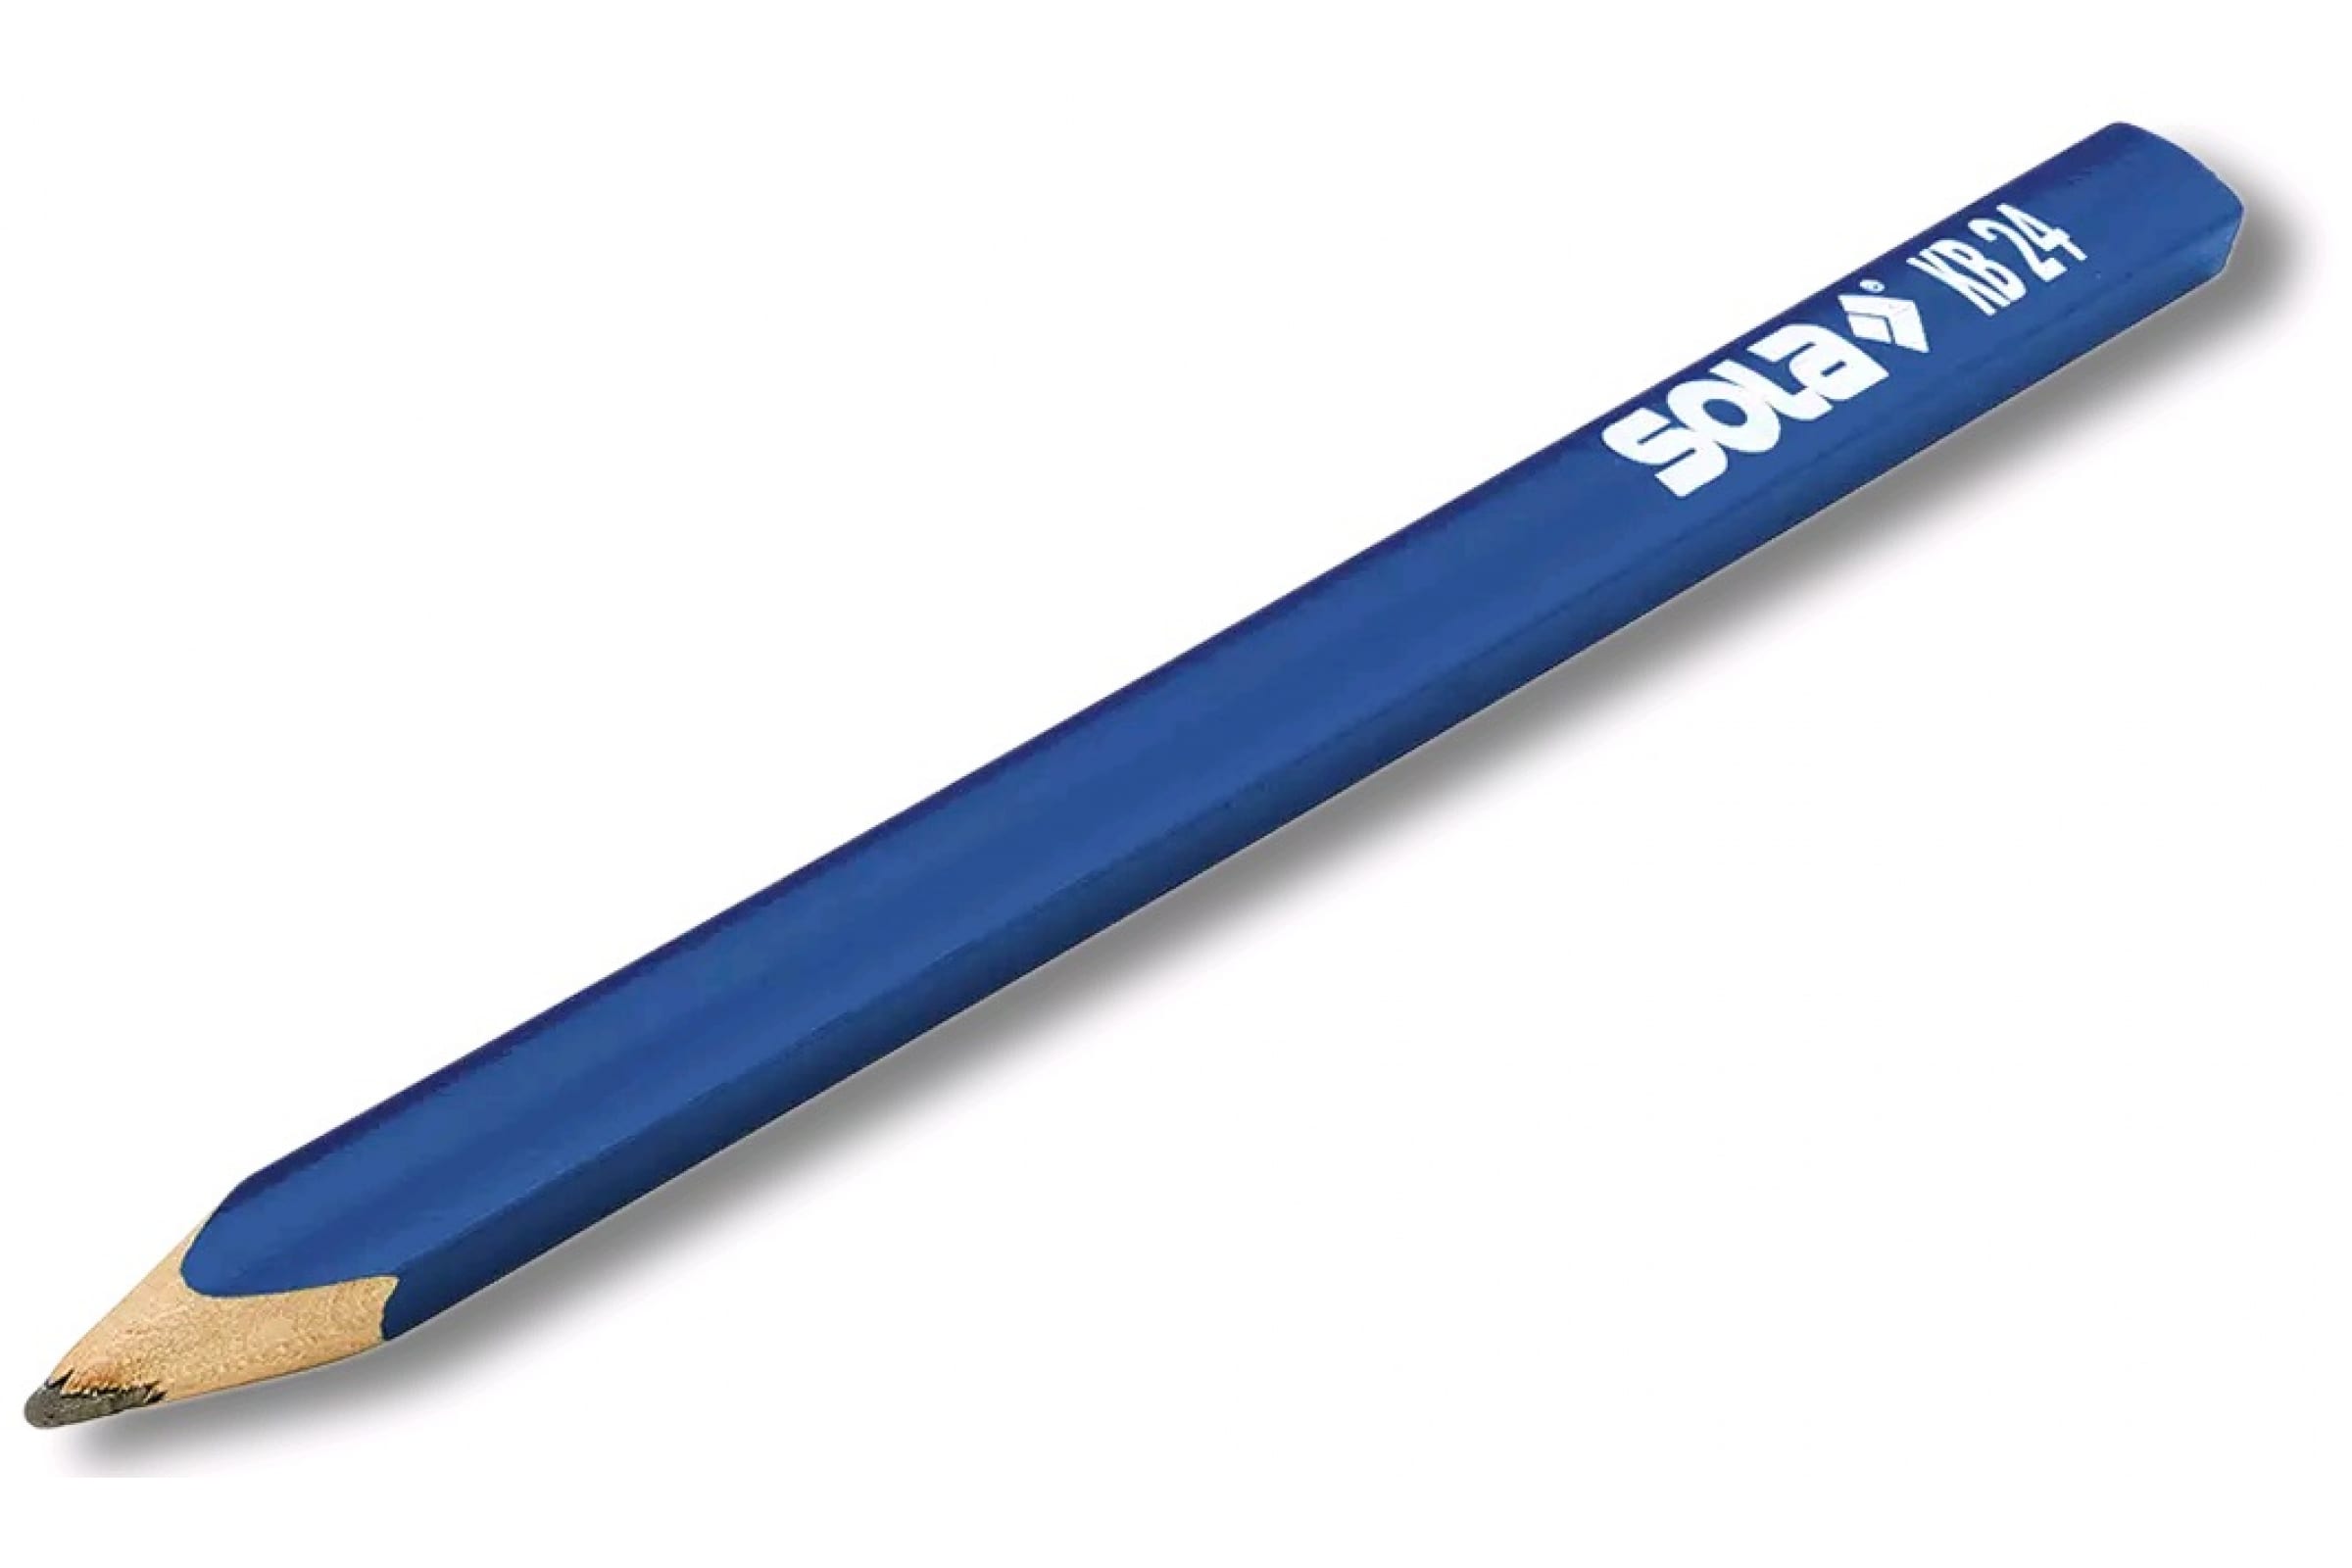 SOLA Карандаш KB 24 для влажных поверхностей 66012520 карандаш для гладких поверхностей sola